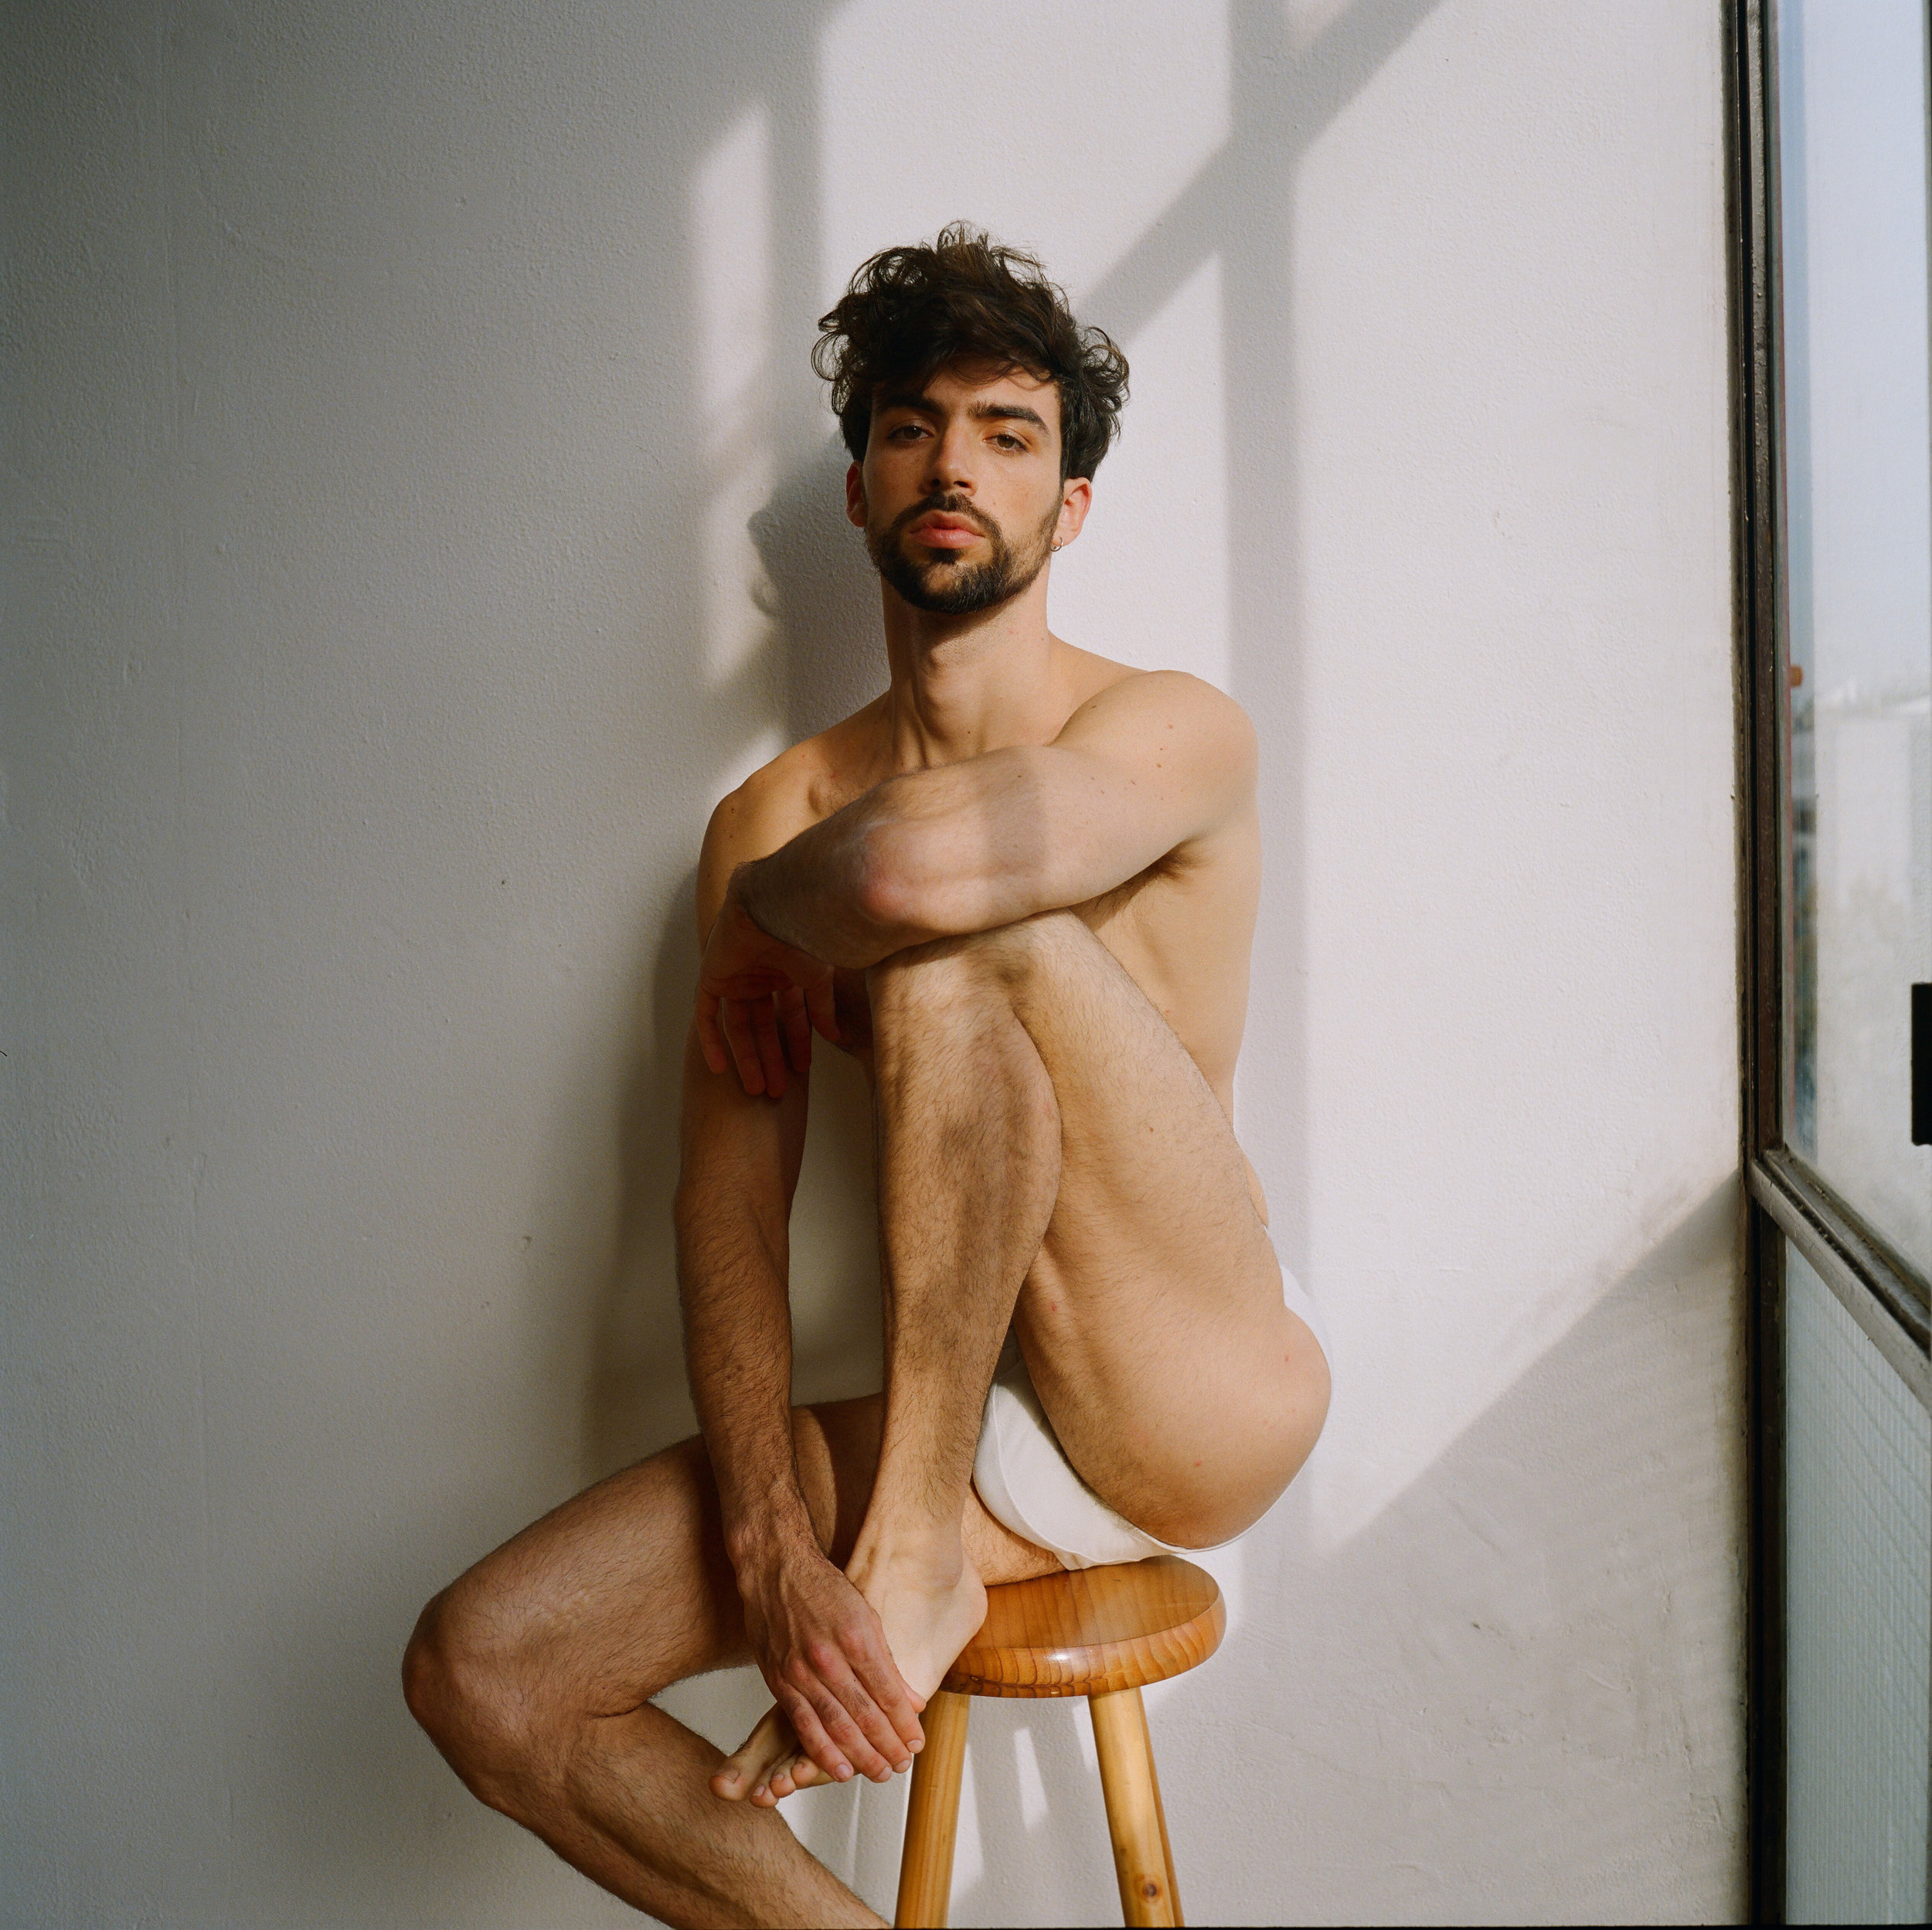 Carlos san juan nude